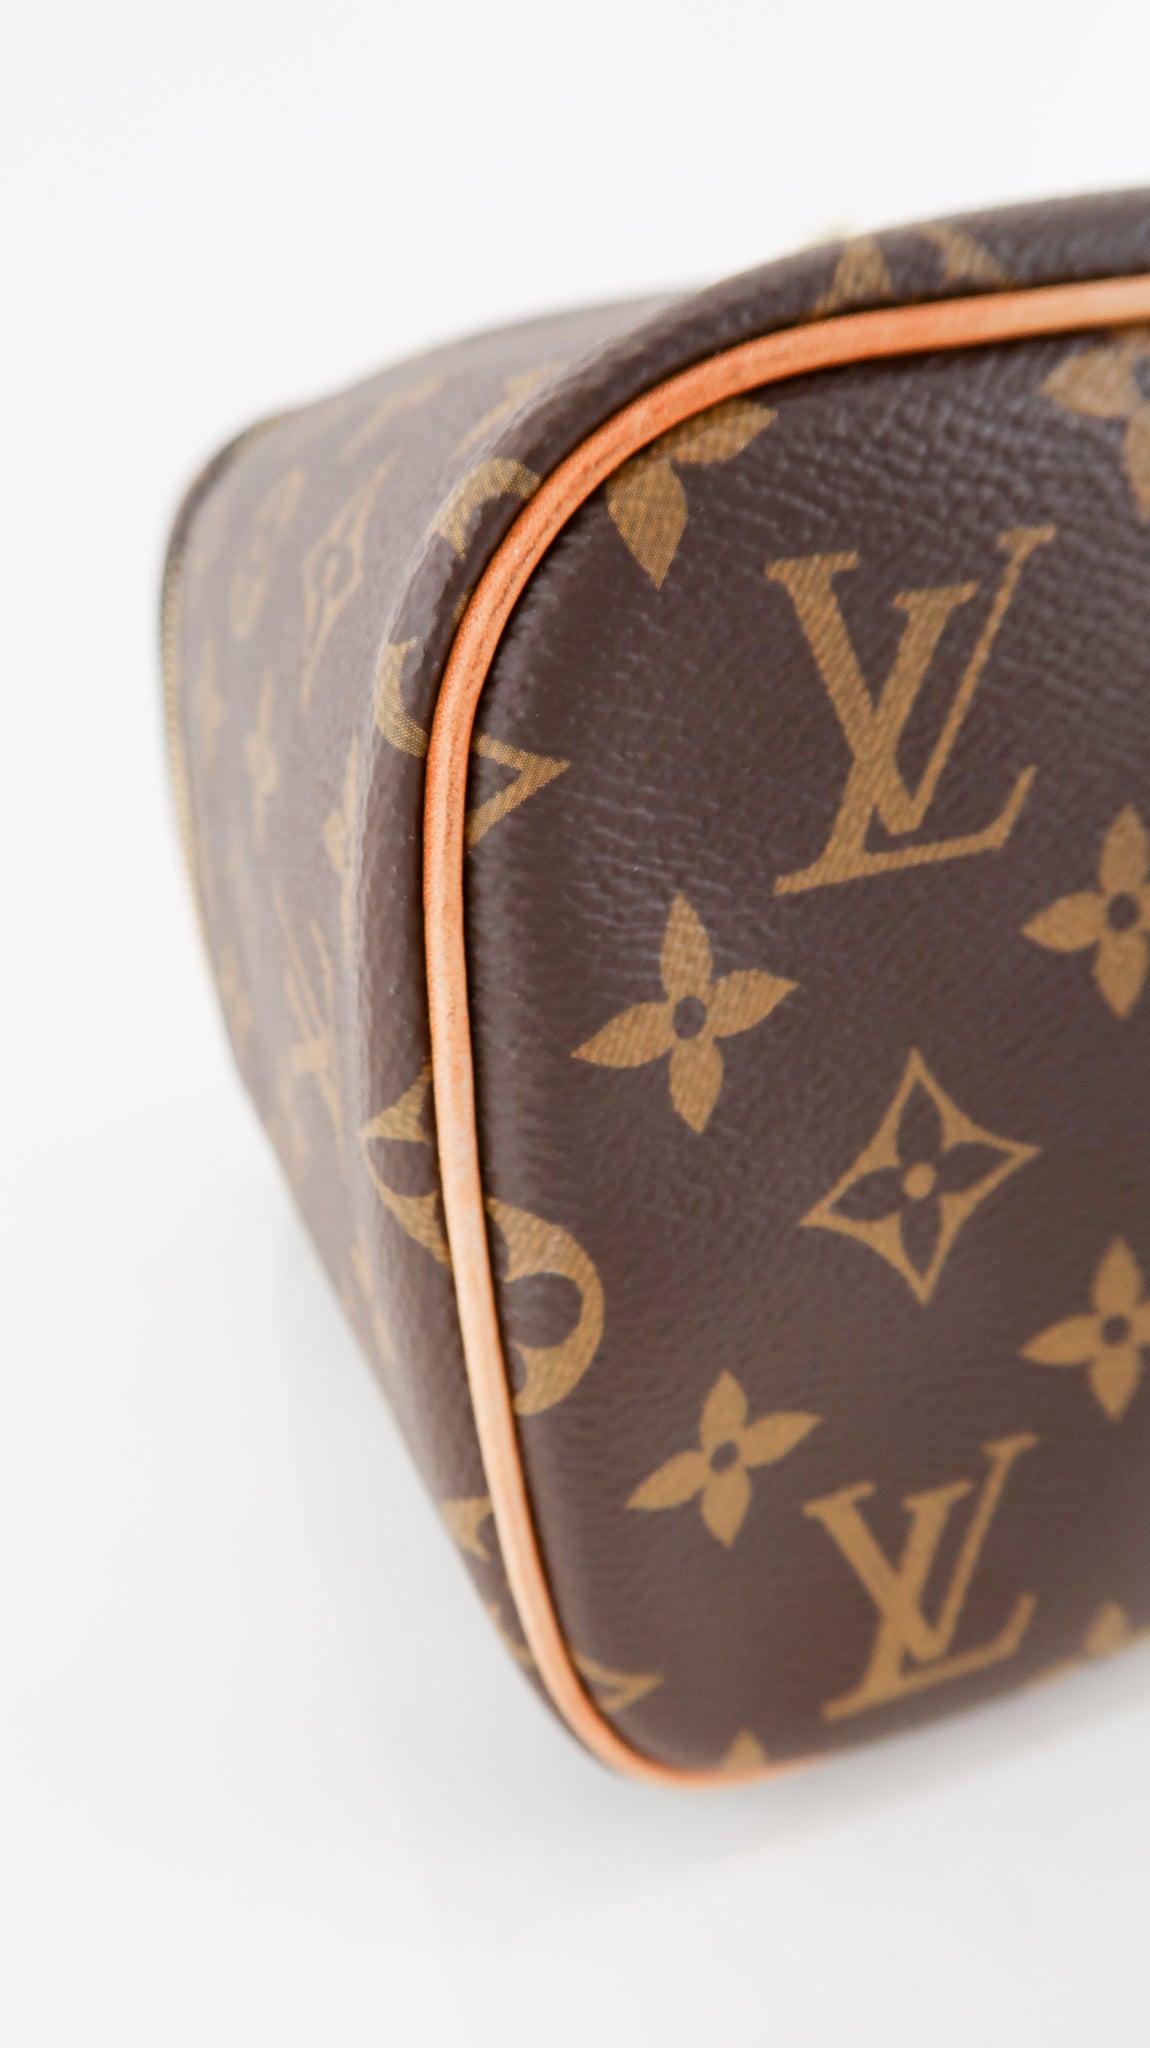 Louis Vuitton Monogram Nice BB – DAC